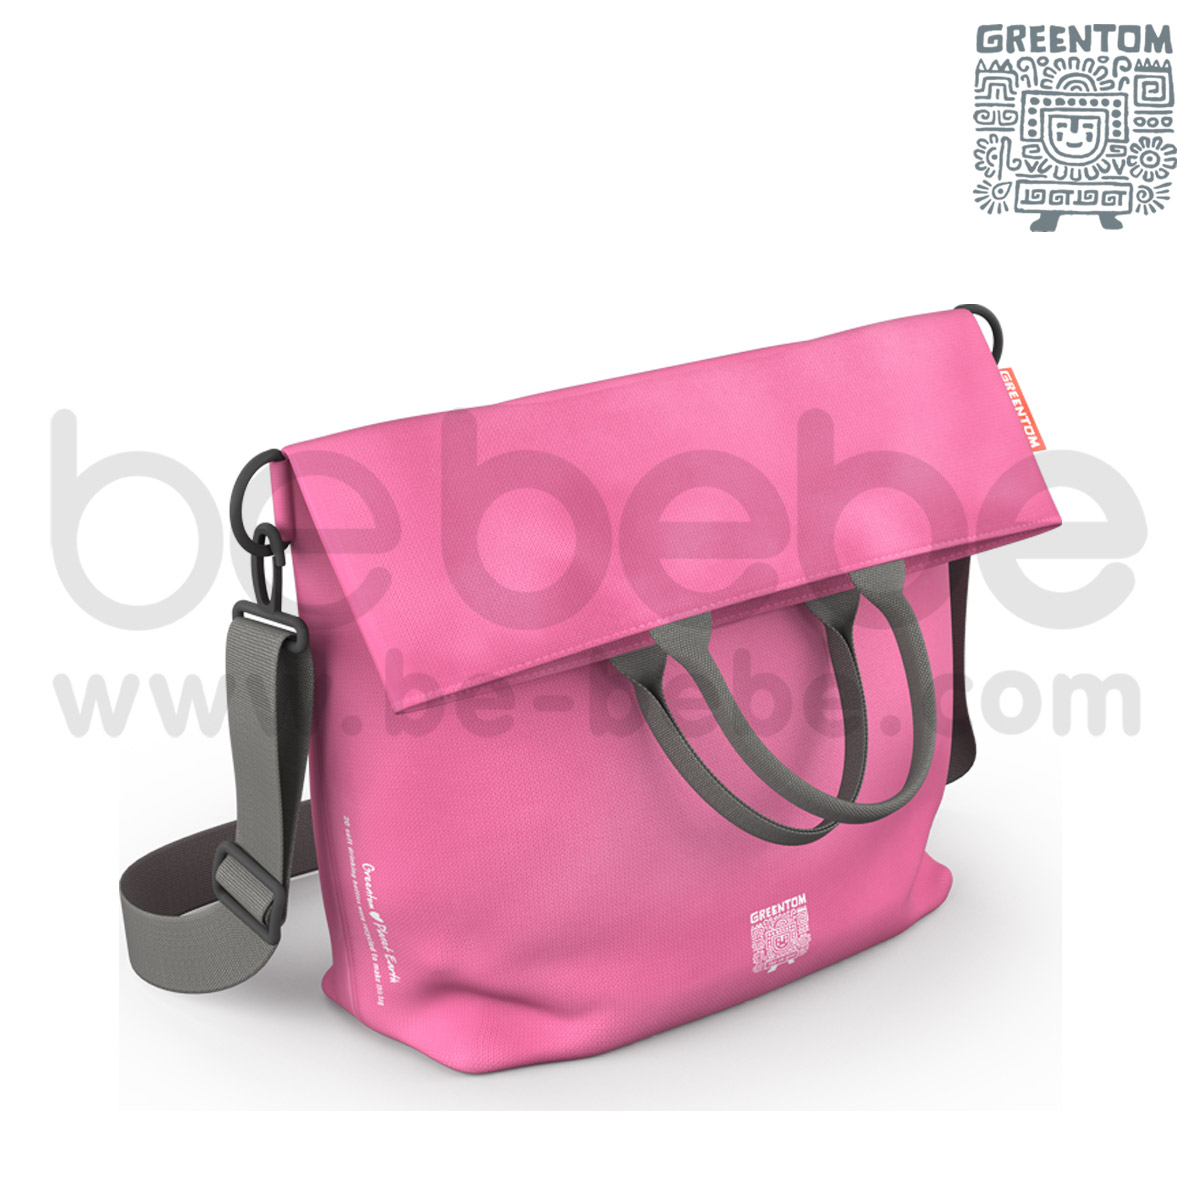 Greentom : Diaper Bag / Pink